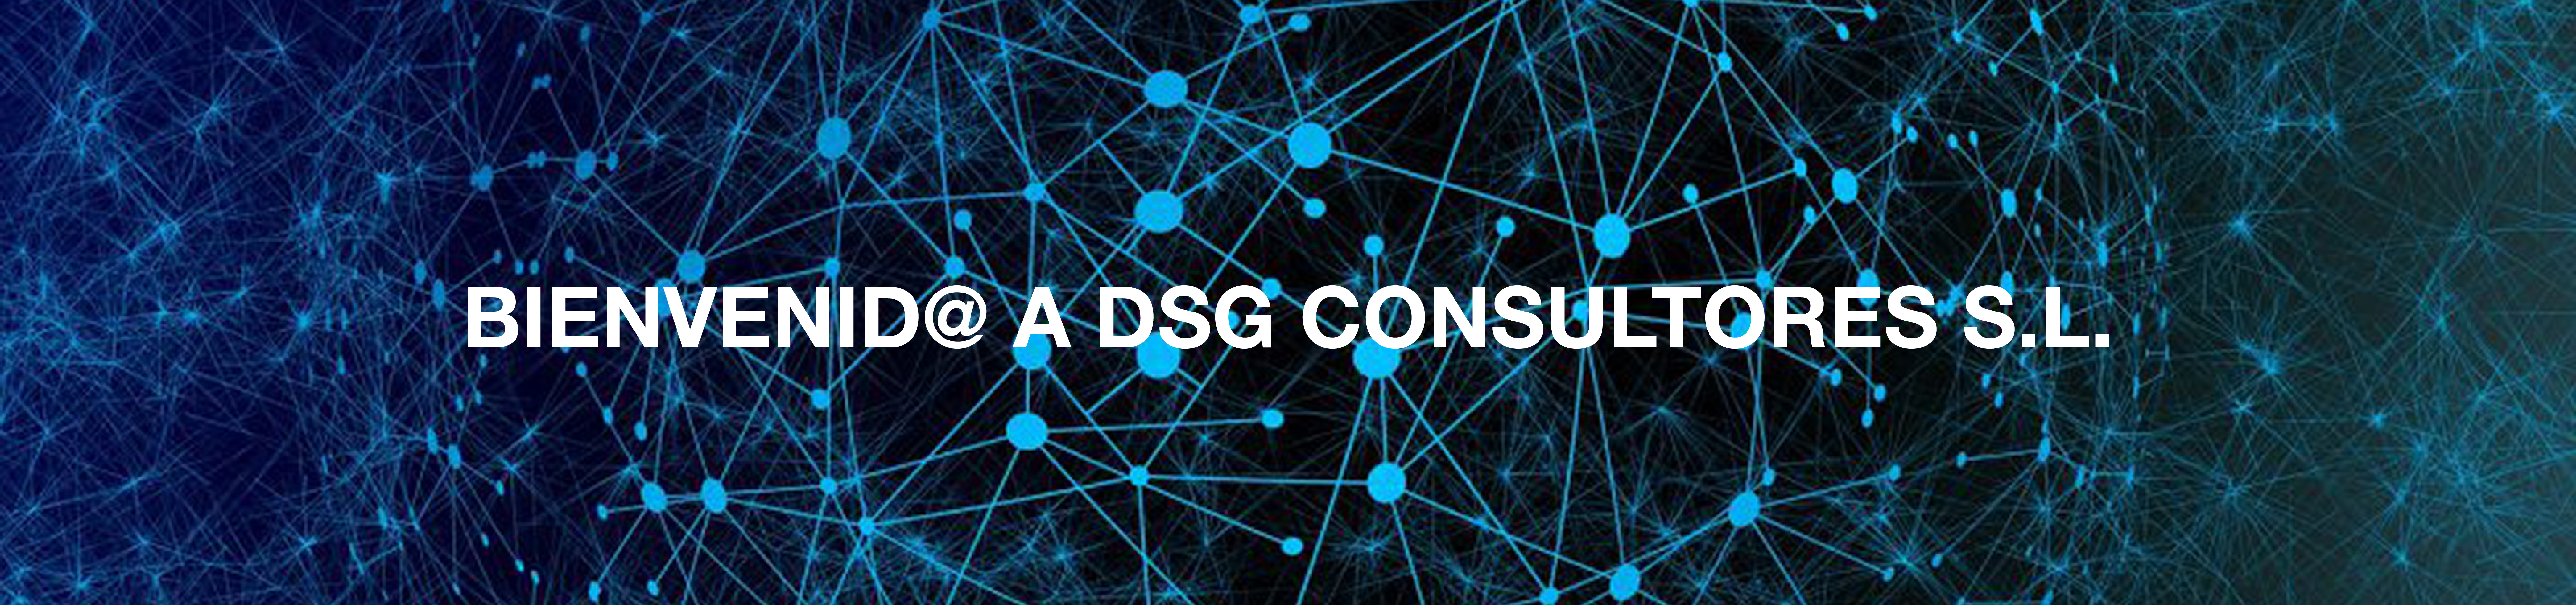 DSG Consultores